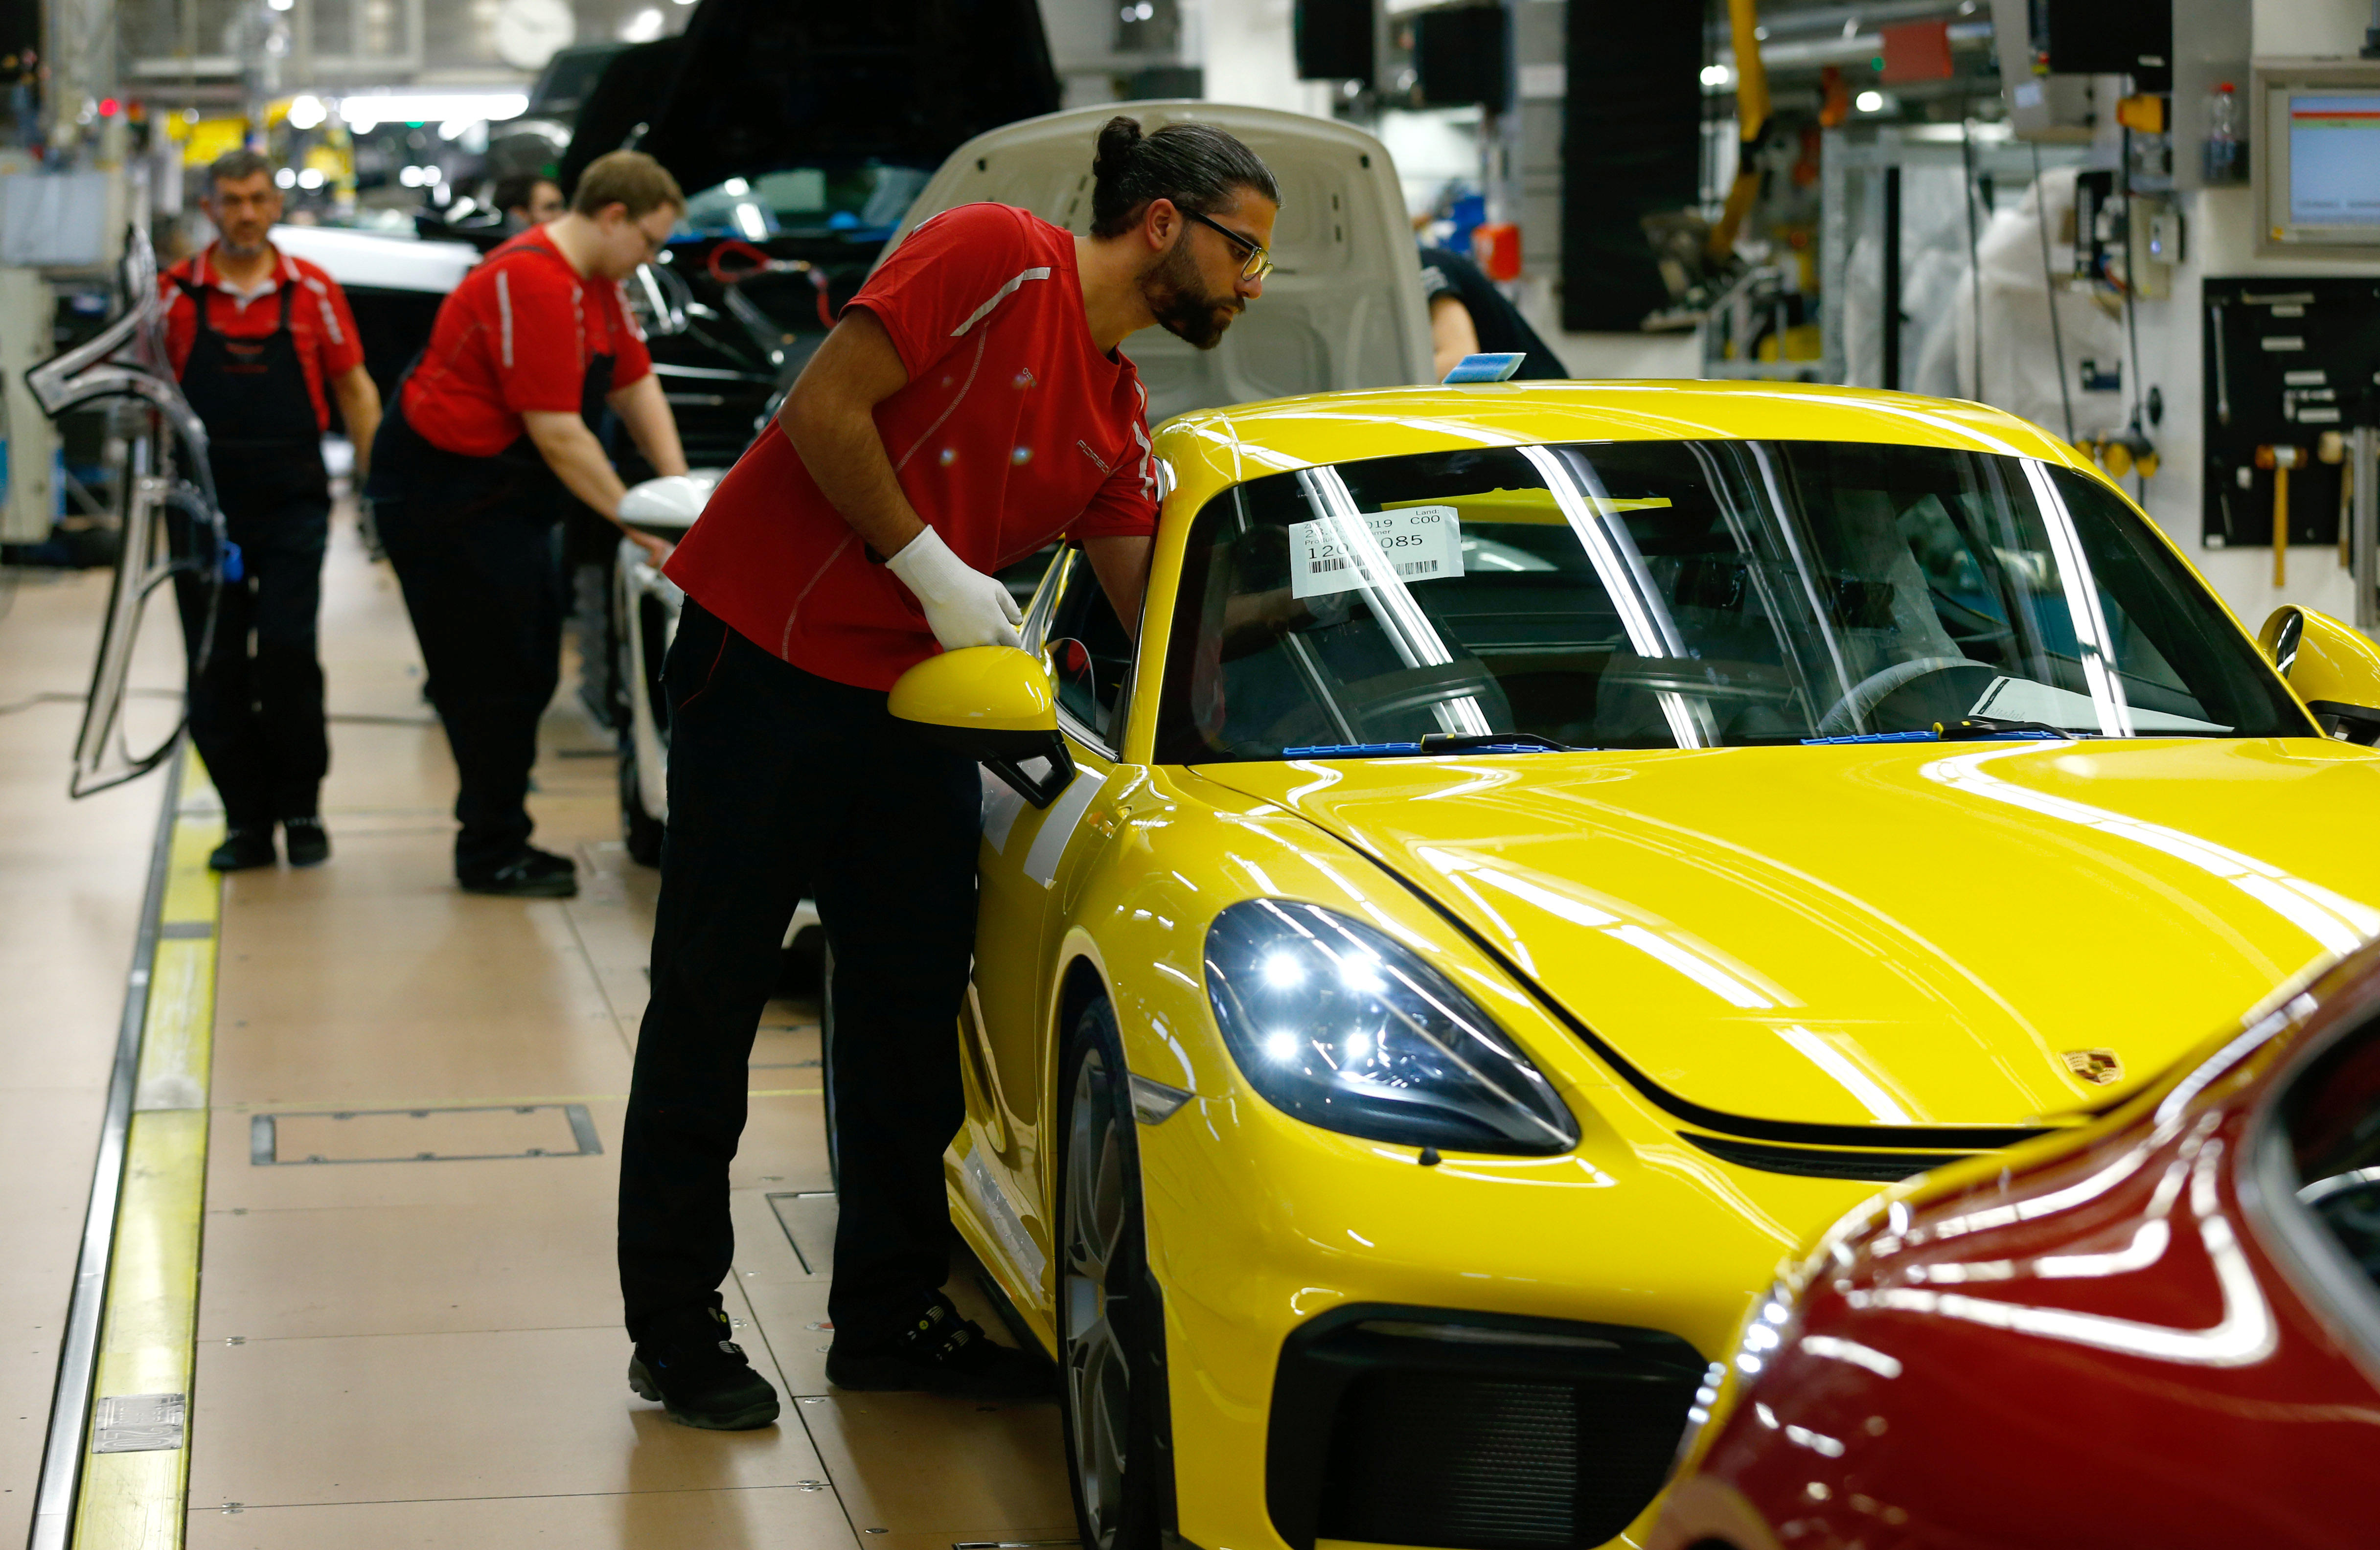 Employees of German car manufacturer Porsche assemble sports cars at the Porsche factory in Stuttgart-Zuffenhausen